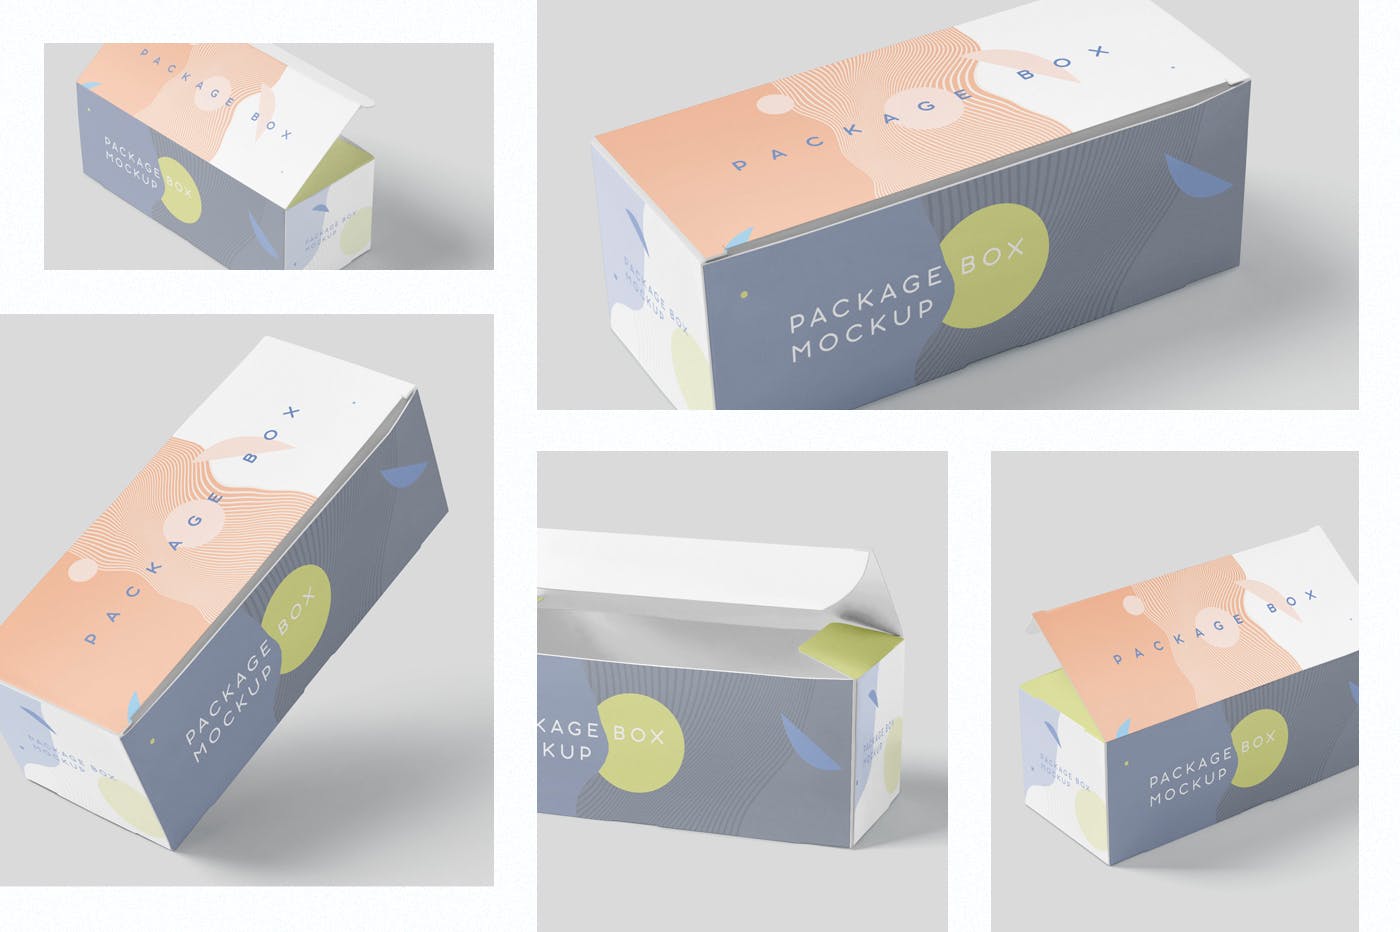 宽矩形包装盒外观设计效果图蚂蚁素材精选 Package Box Mock-Up Set – Wide Rectangle插图(1)